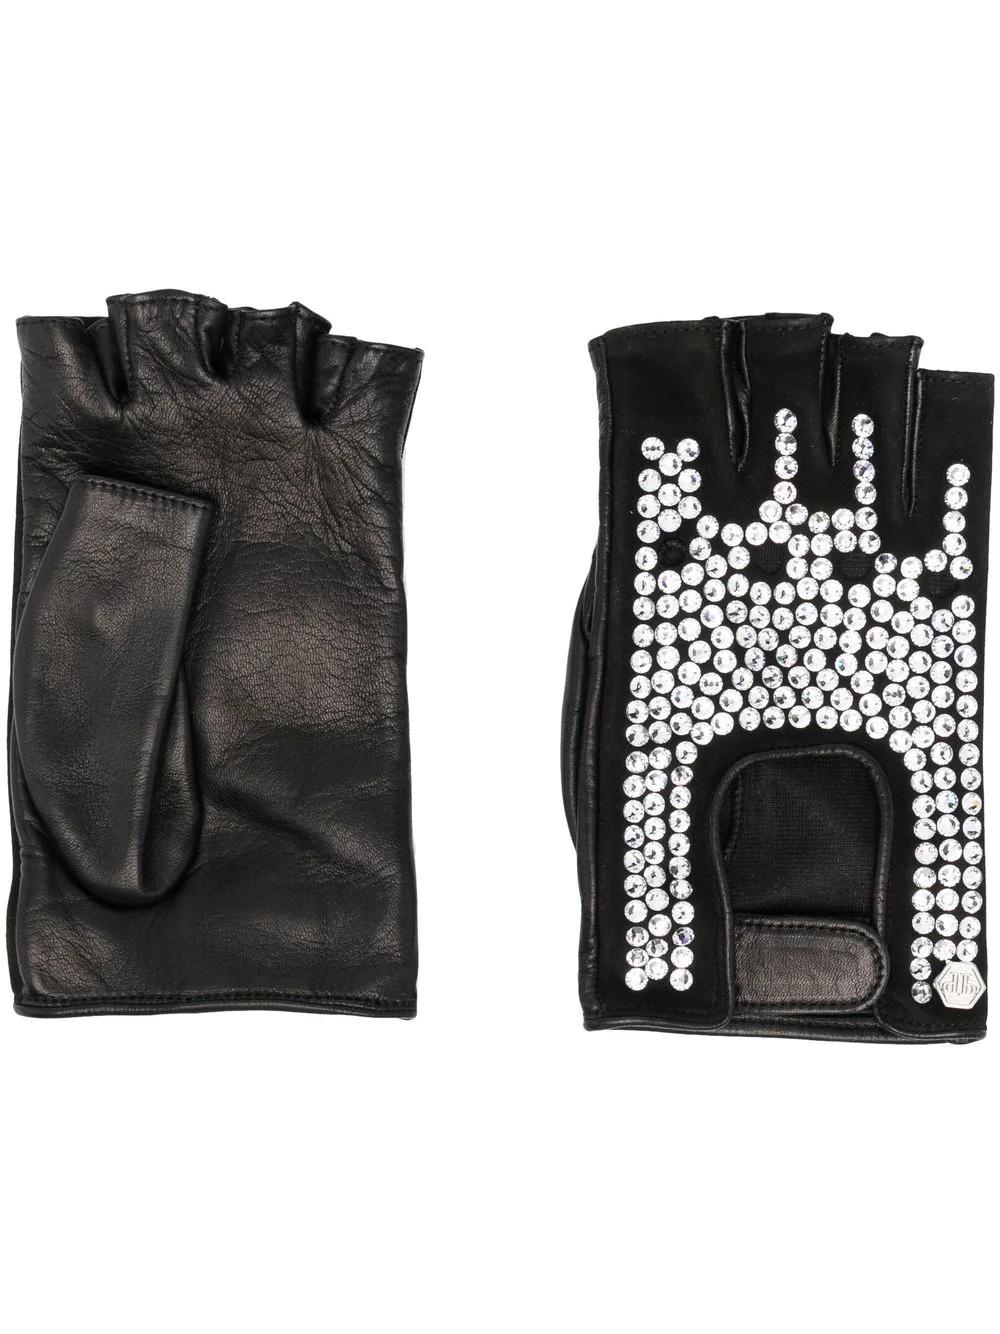 crystal-embellished leather gloves - 1